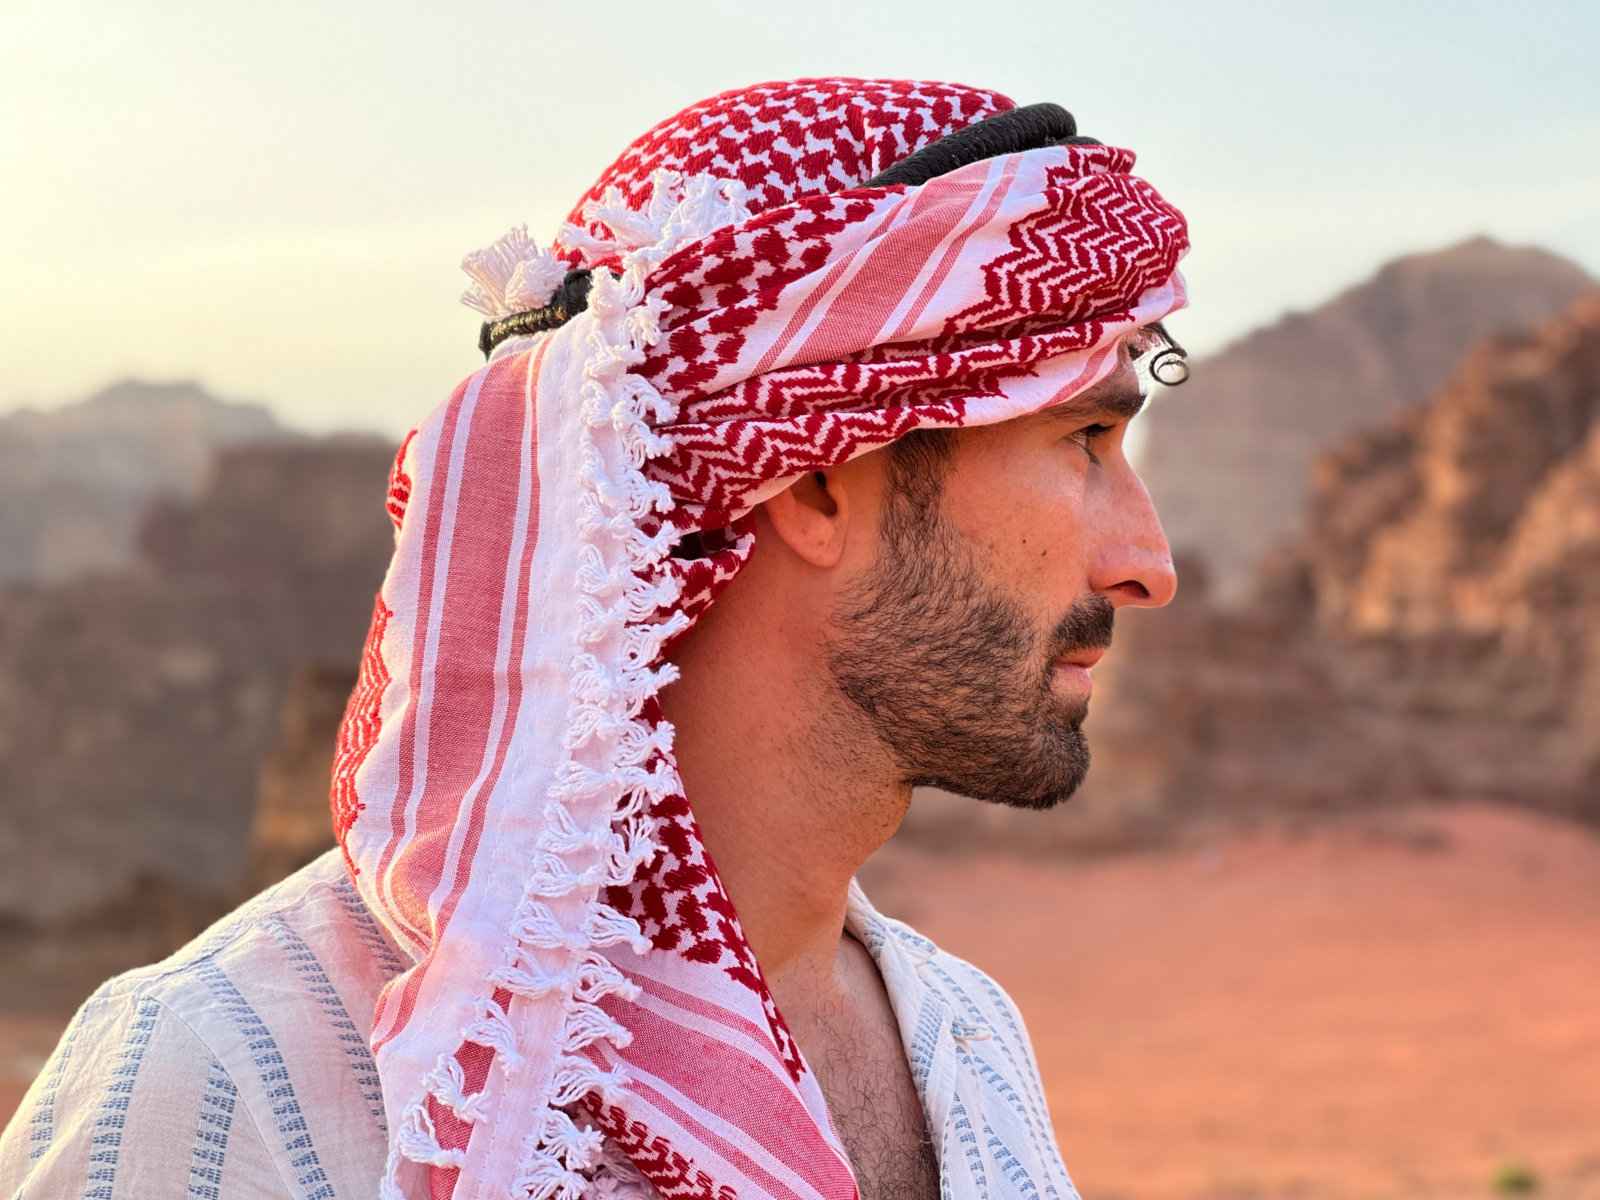 Stefan from Nomadic Boys wearing an Arabic kaffiyeh headscarf.